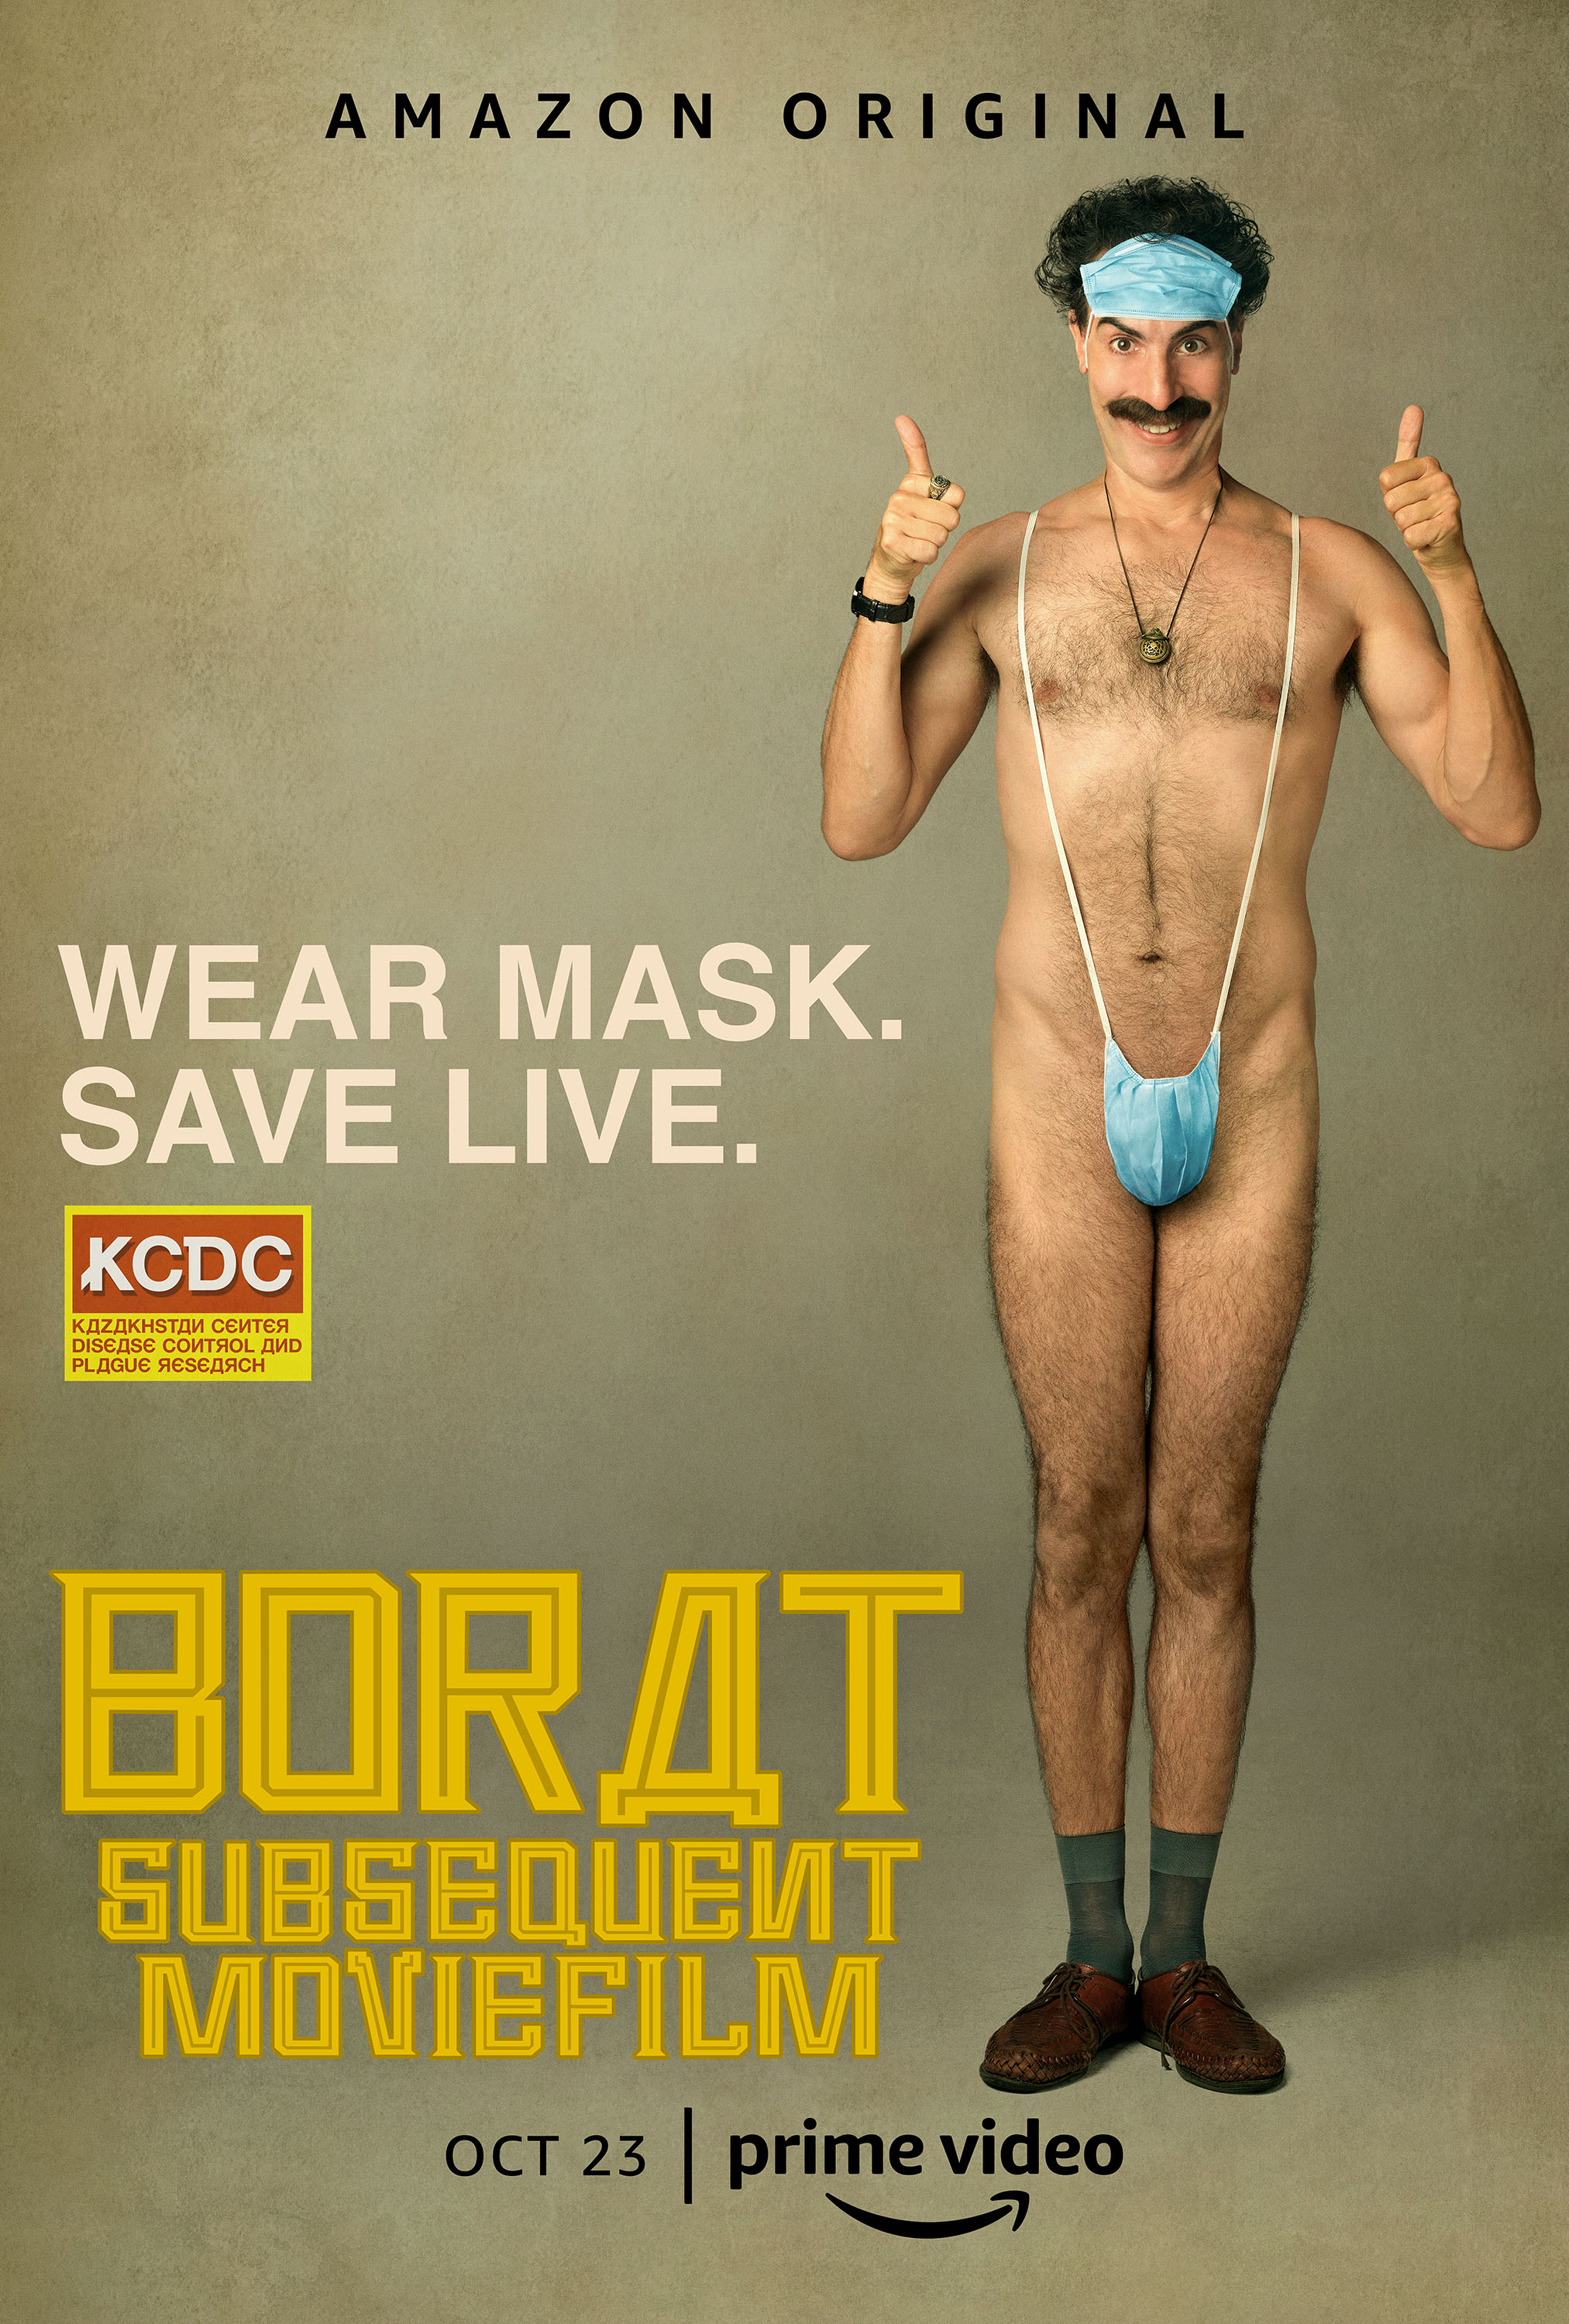 Borat Subsequent Moviefilm (2020)[WebRip][1080p] = CSFD 77%